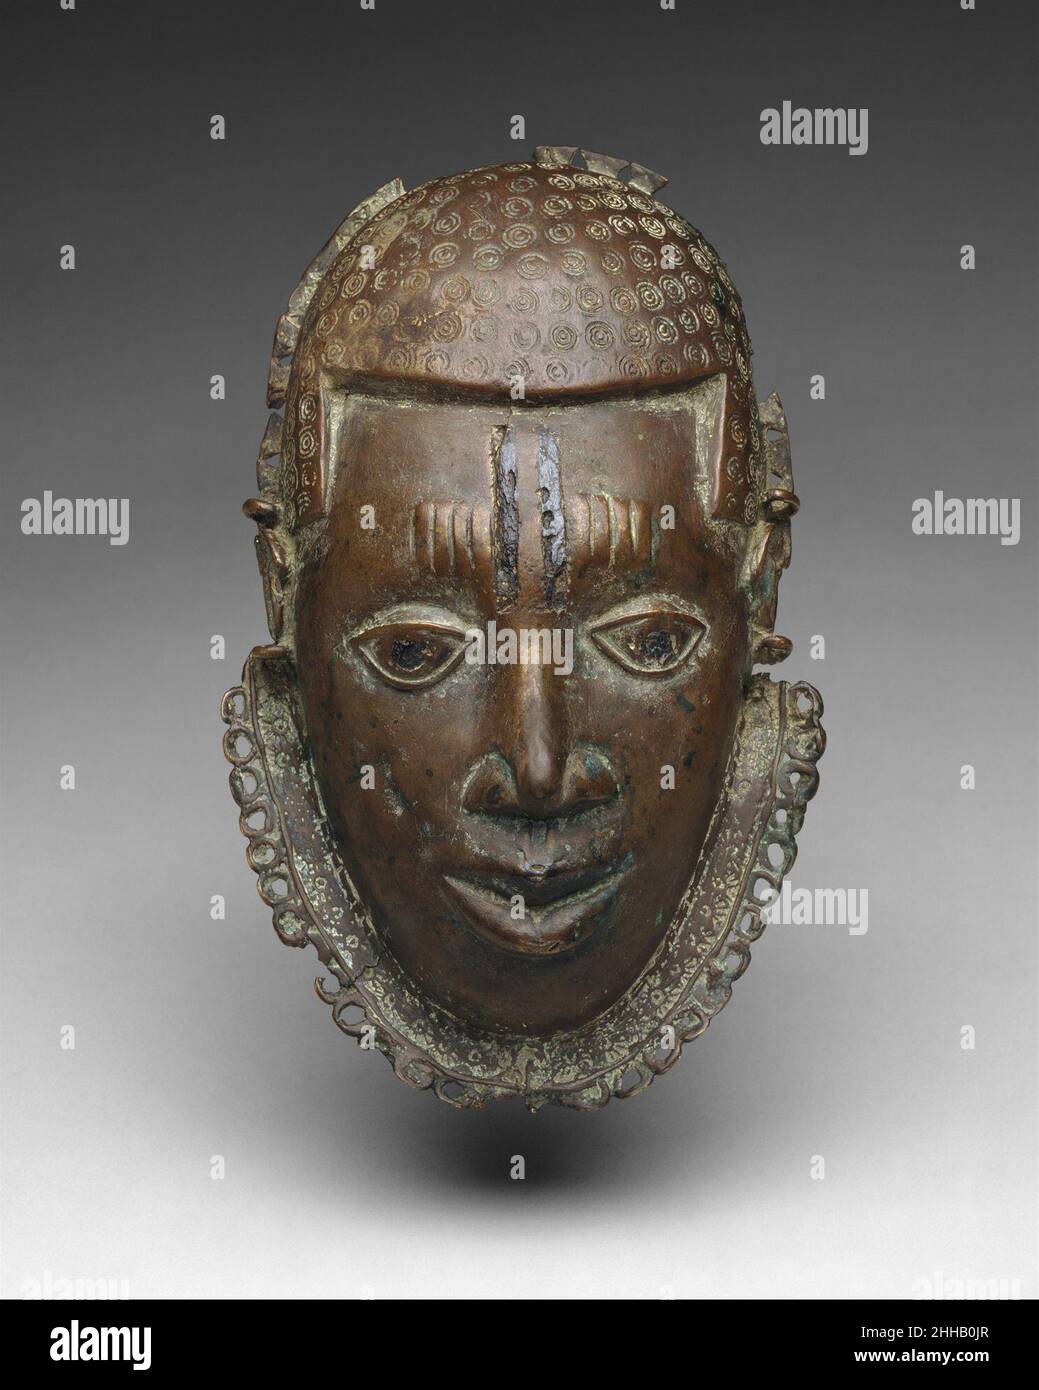 Pektoral: Gesicht 15th.–17th. Jahrhundert Edo-Völker warfen Messingmasken wie diese, die im Besitz von überragenden Häuptern und Titelverteidern des Benin-Königreichs waren. Diese Masken, die das Gesicht des oba selbst repräsentieren, wurden am Hals getragen, um den Rang anzuzeigen und dem König die Treue zu demonstrieren. Als Benin seinen politischen Einfluss und seine militärische Kontrolle über viele seiner Nachbarn ausweitete, erhielten auch die ausländischen Herrscher, die in sein politisches System aufgenommen wurden, diese Masken. Am Hof von königlichen Messingrollen geschaffen, wurden solche Werke von der oba an neu eingegliederte Häupter verteilt. Diese Arbeit ist es Stockfoto